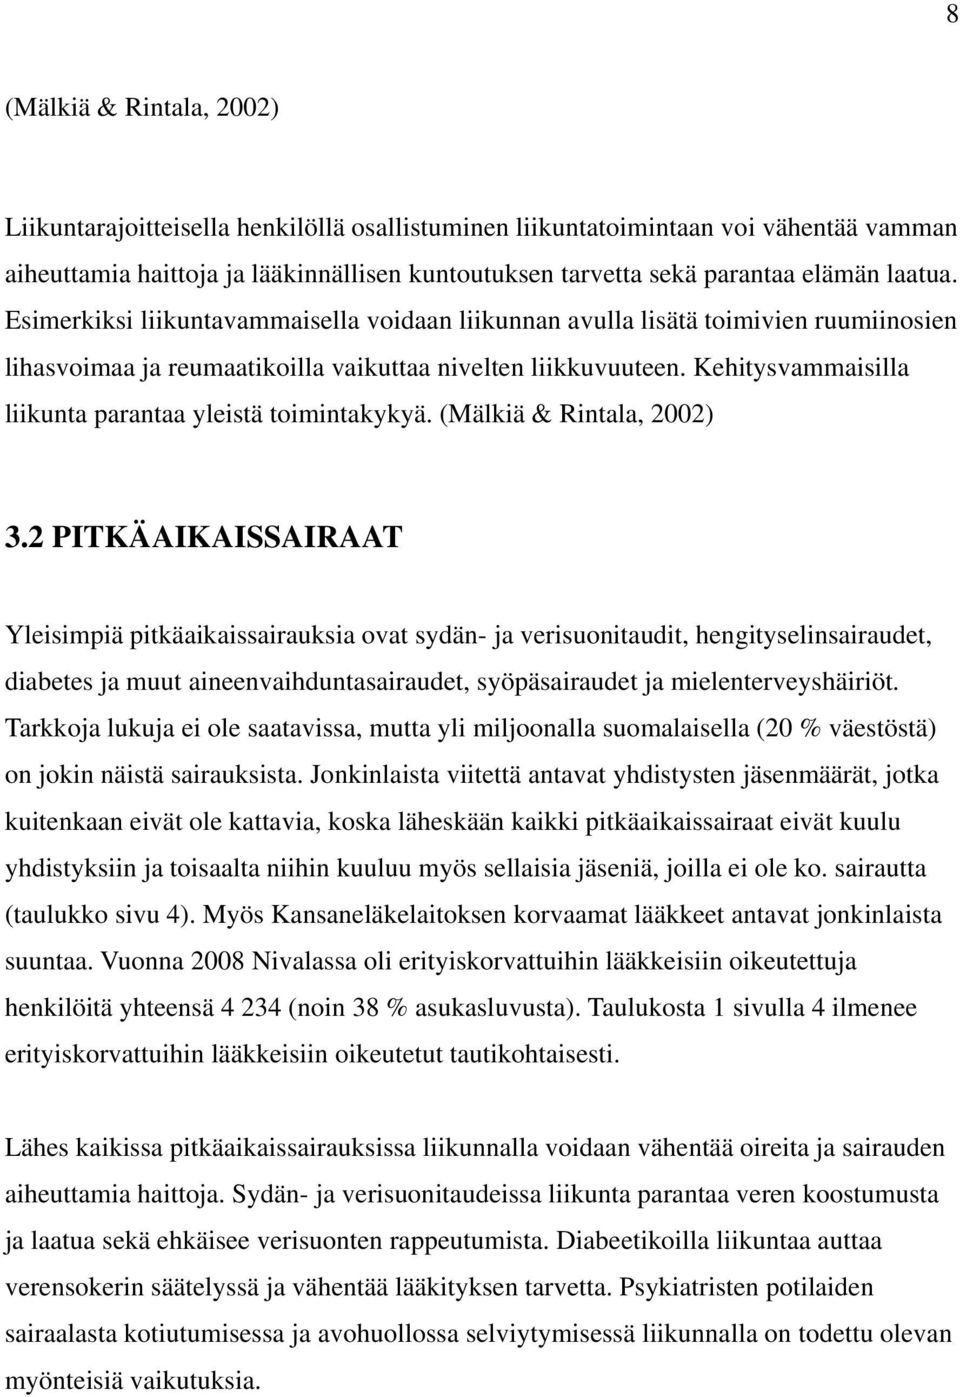 Kehitysvammaisilla liikunta parantaa yleistä toimintakykyä. (Mälkiä & Rintala, 2002) 3.